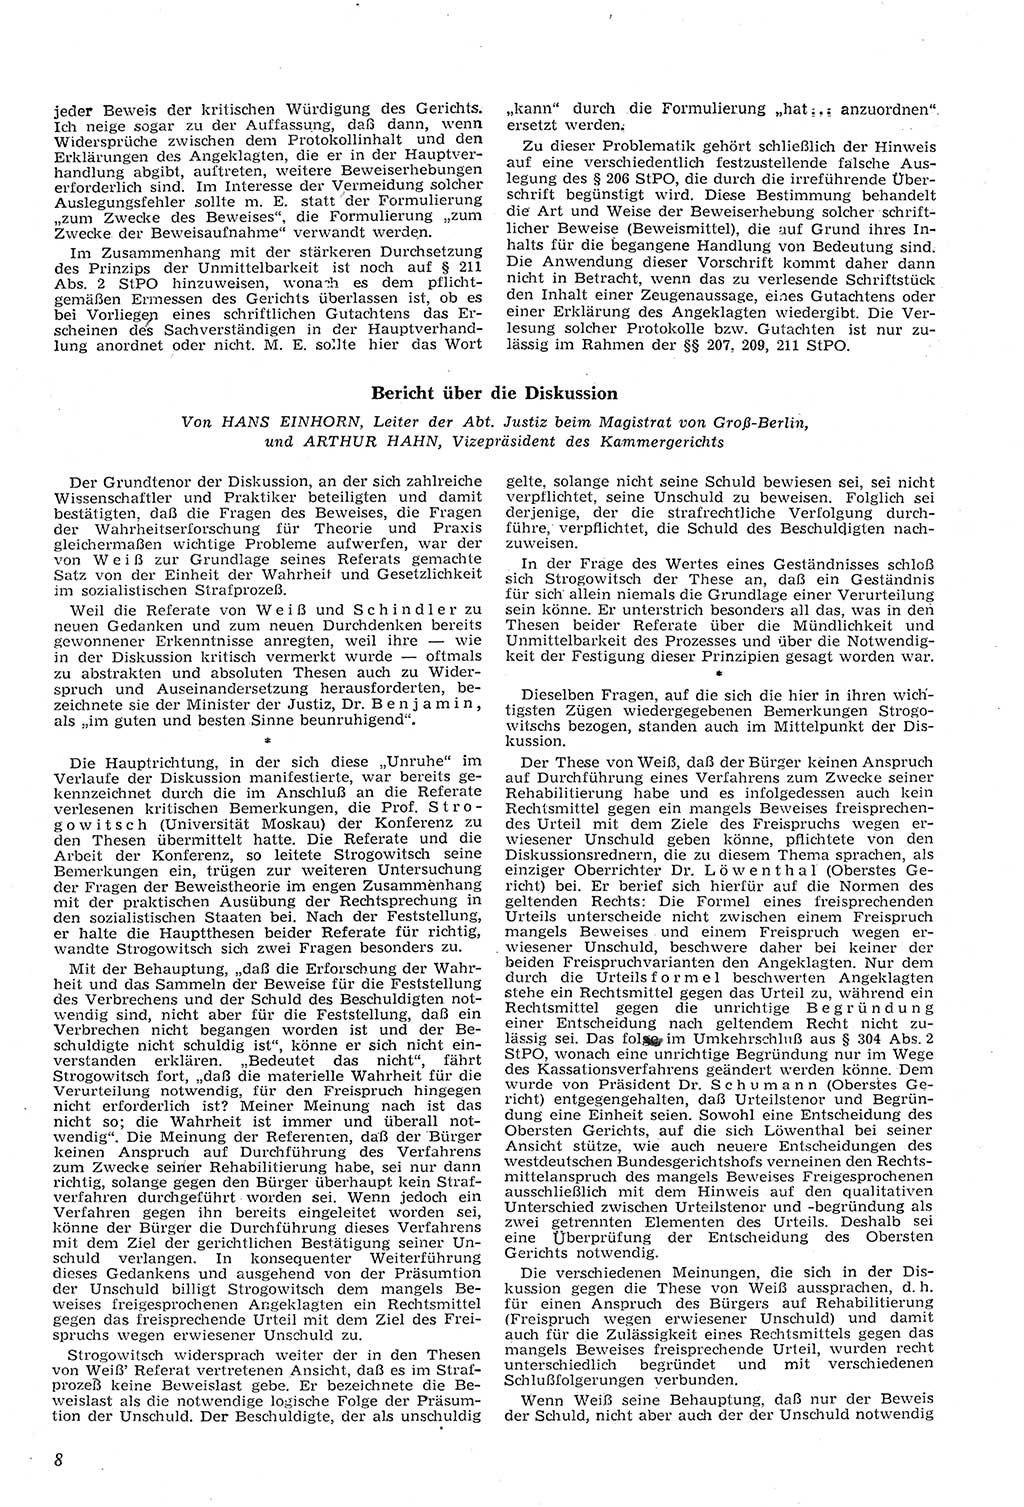 Neue Justiz (NJ), Zeitschrift für Recht und Rechtswissenschaft [Deutsche Demokratische Republik (DDR)], 11. Jahrgang 1957, Seite 8 (NJ DDR 1957, S. 8)